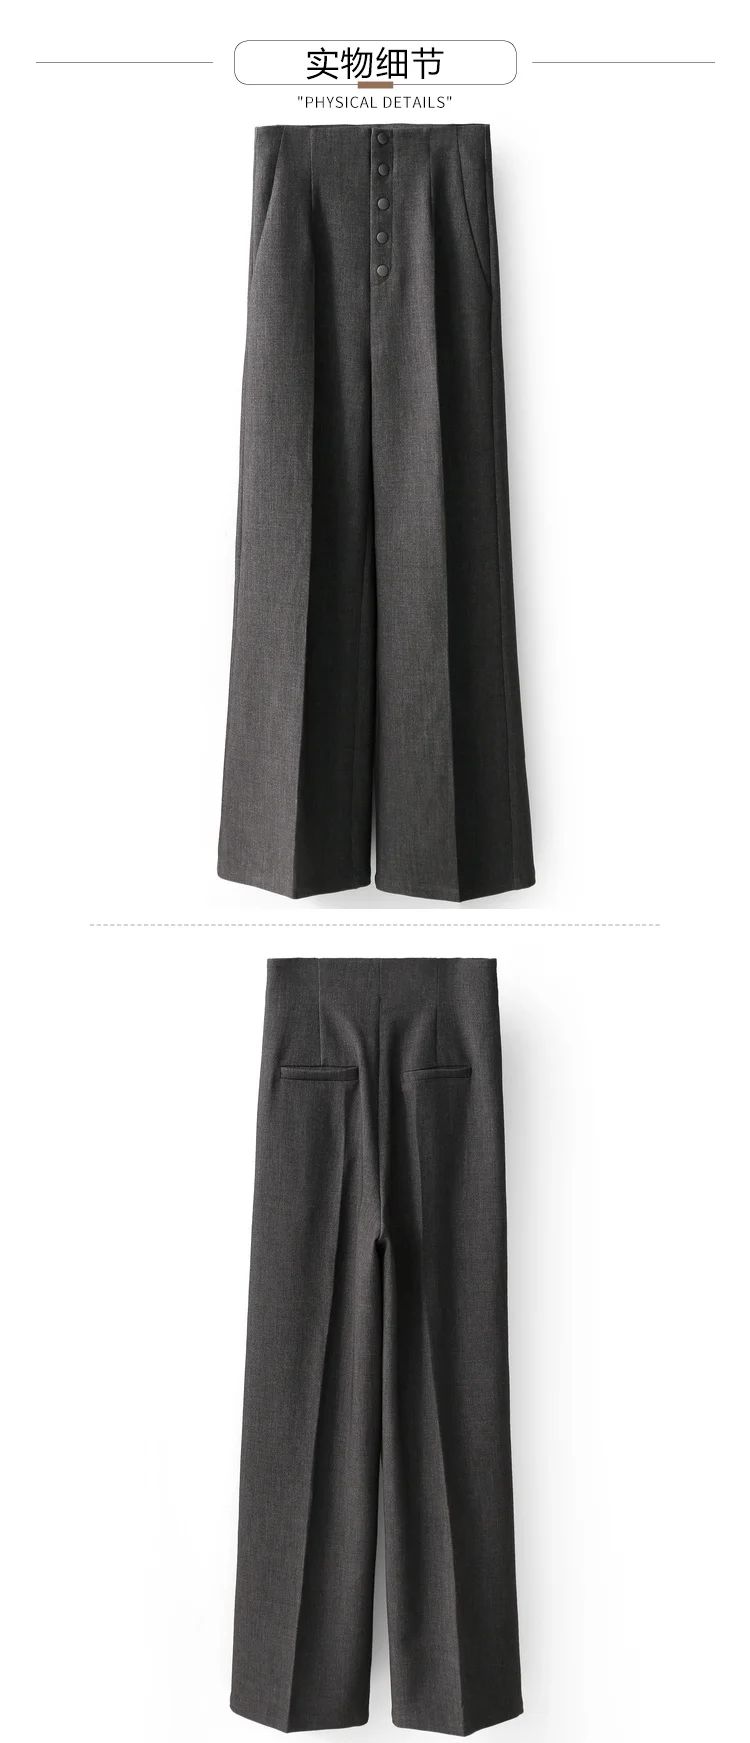 Amii европейский дизайн мешковатые брюки Осень Досуг Профессиональный Высокая талия кулон чувствительные широкие брюки